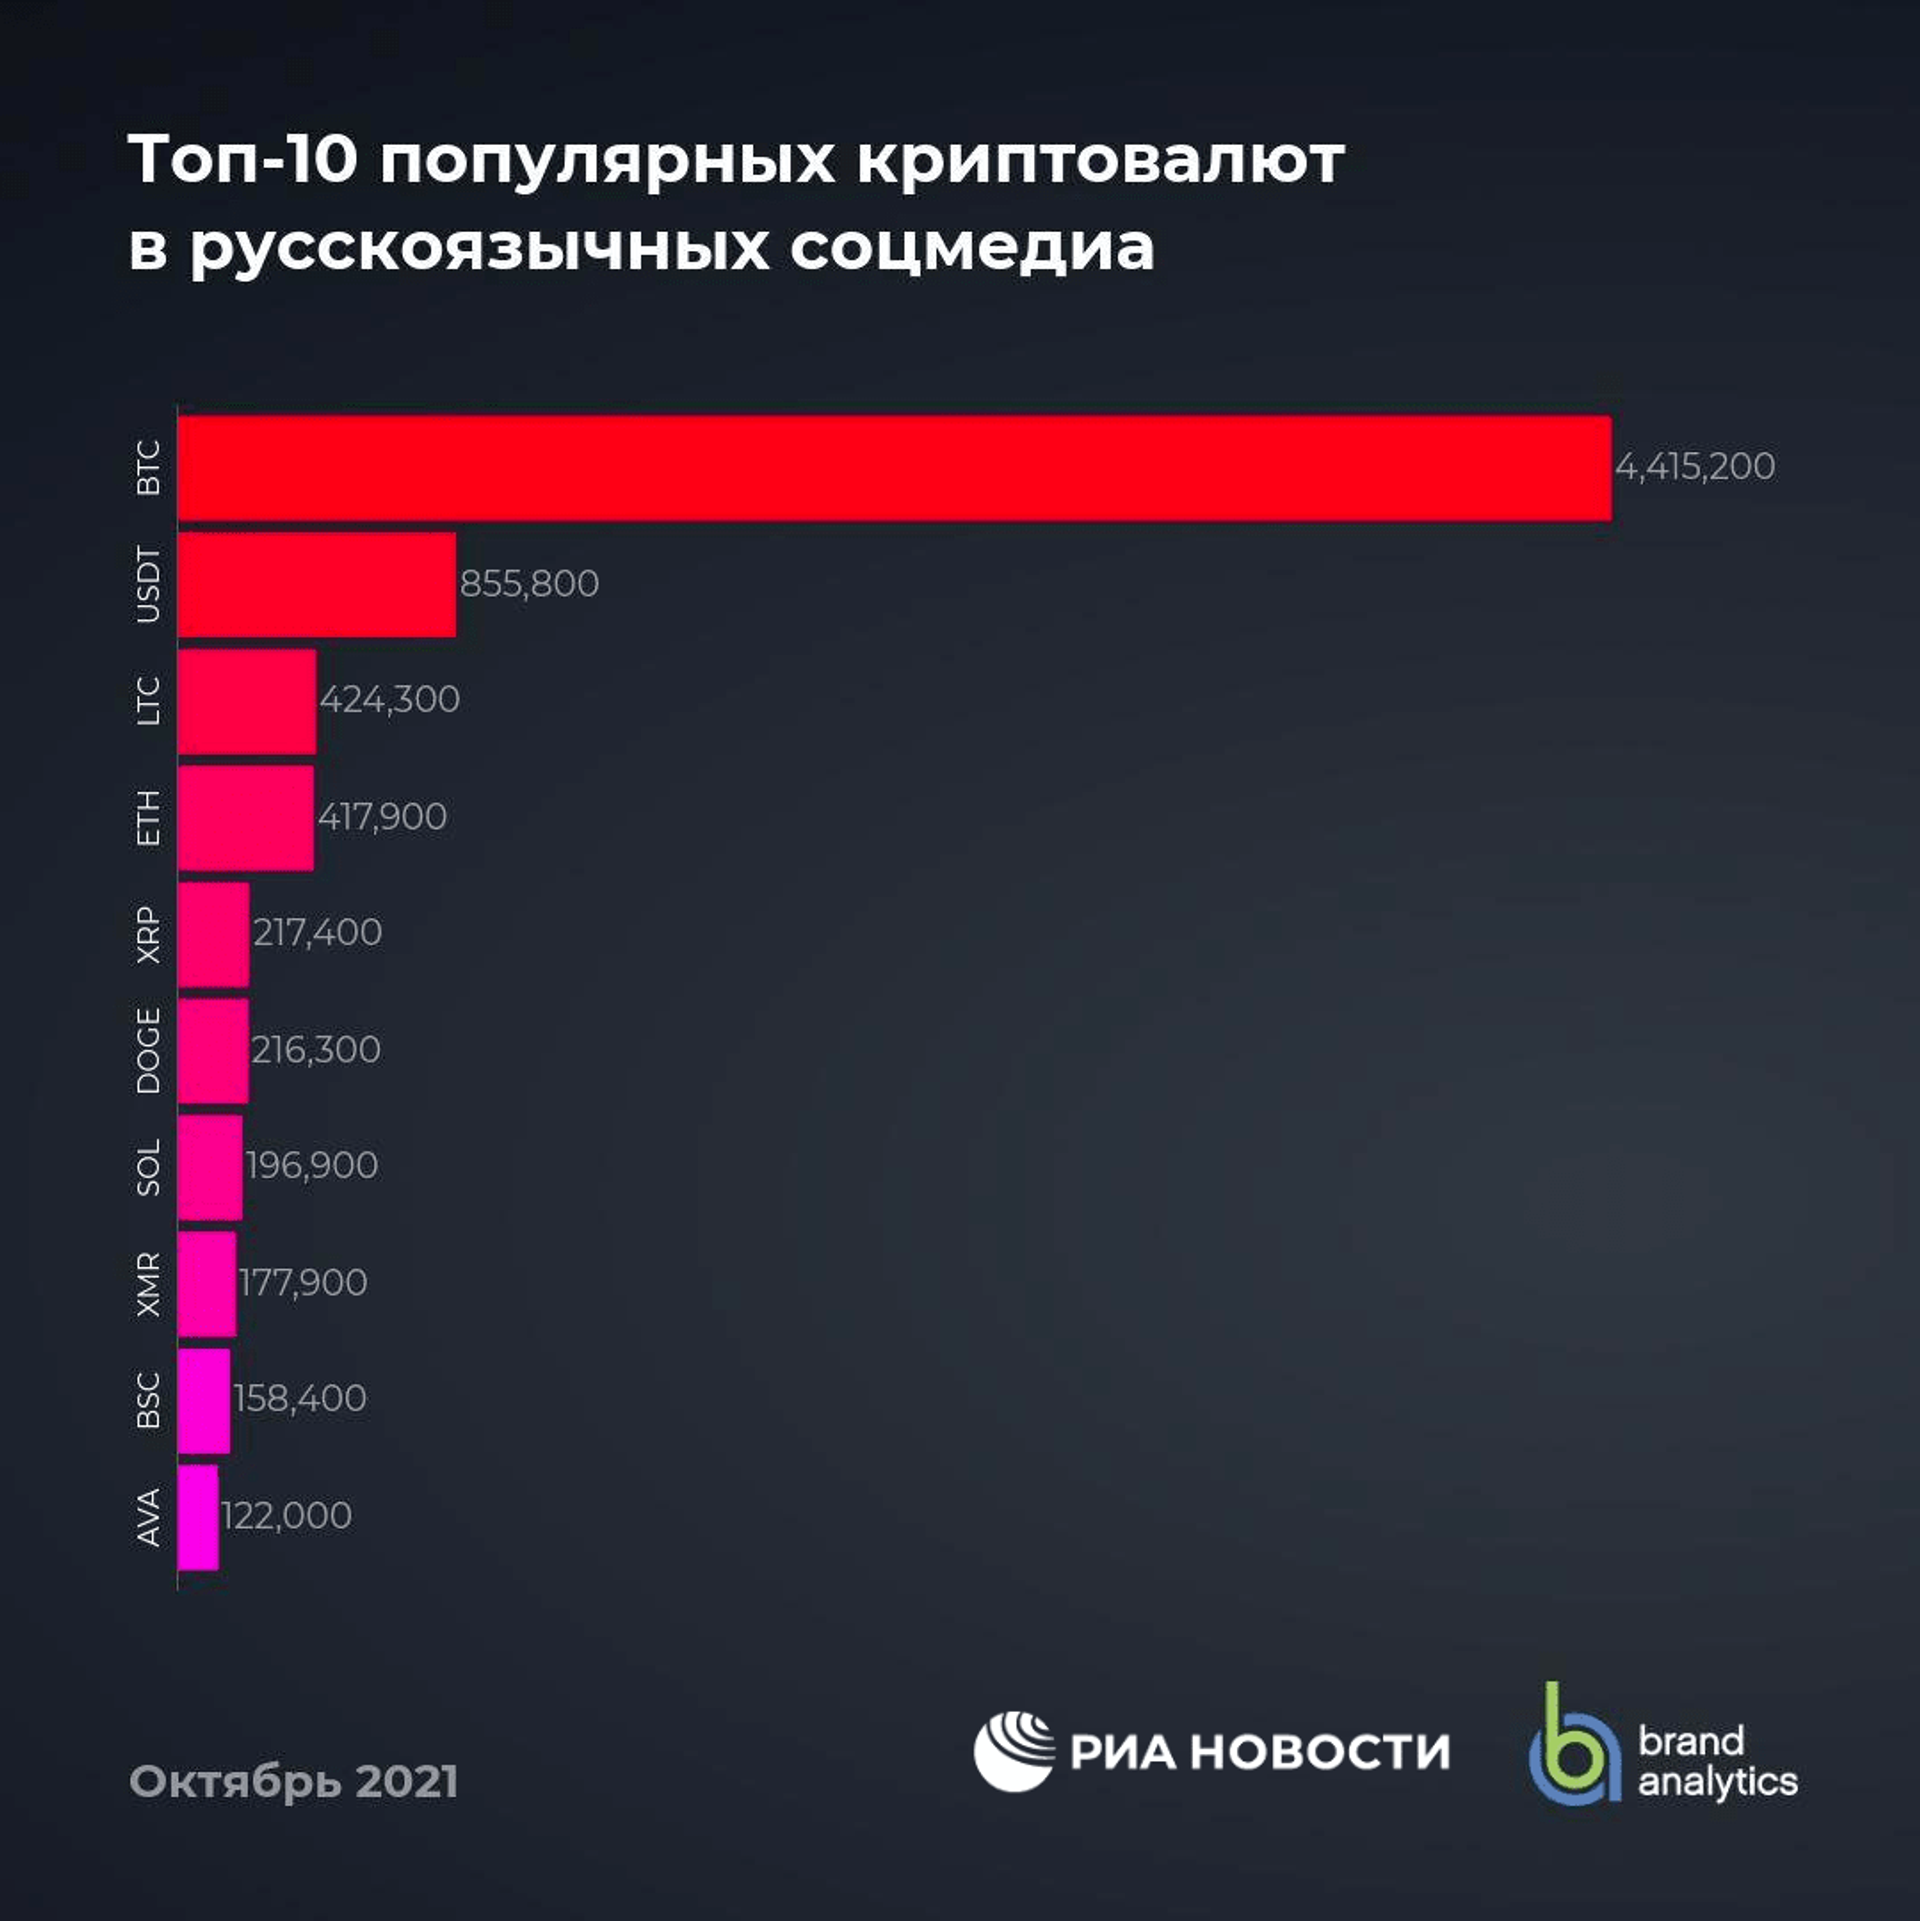 Названы самые популярные криптовалюты в России - РИА Новости, 26.11.2021